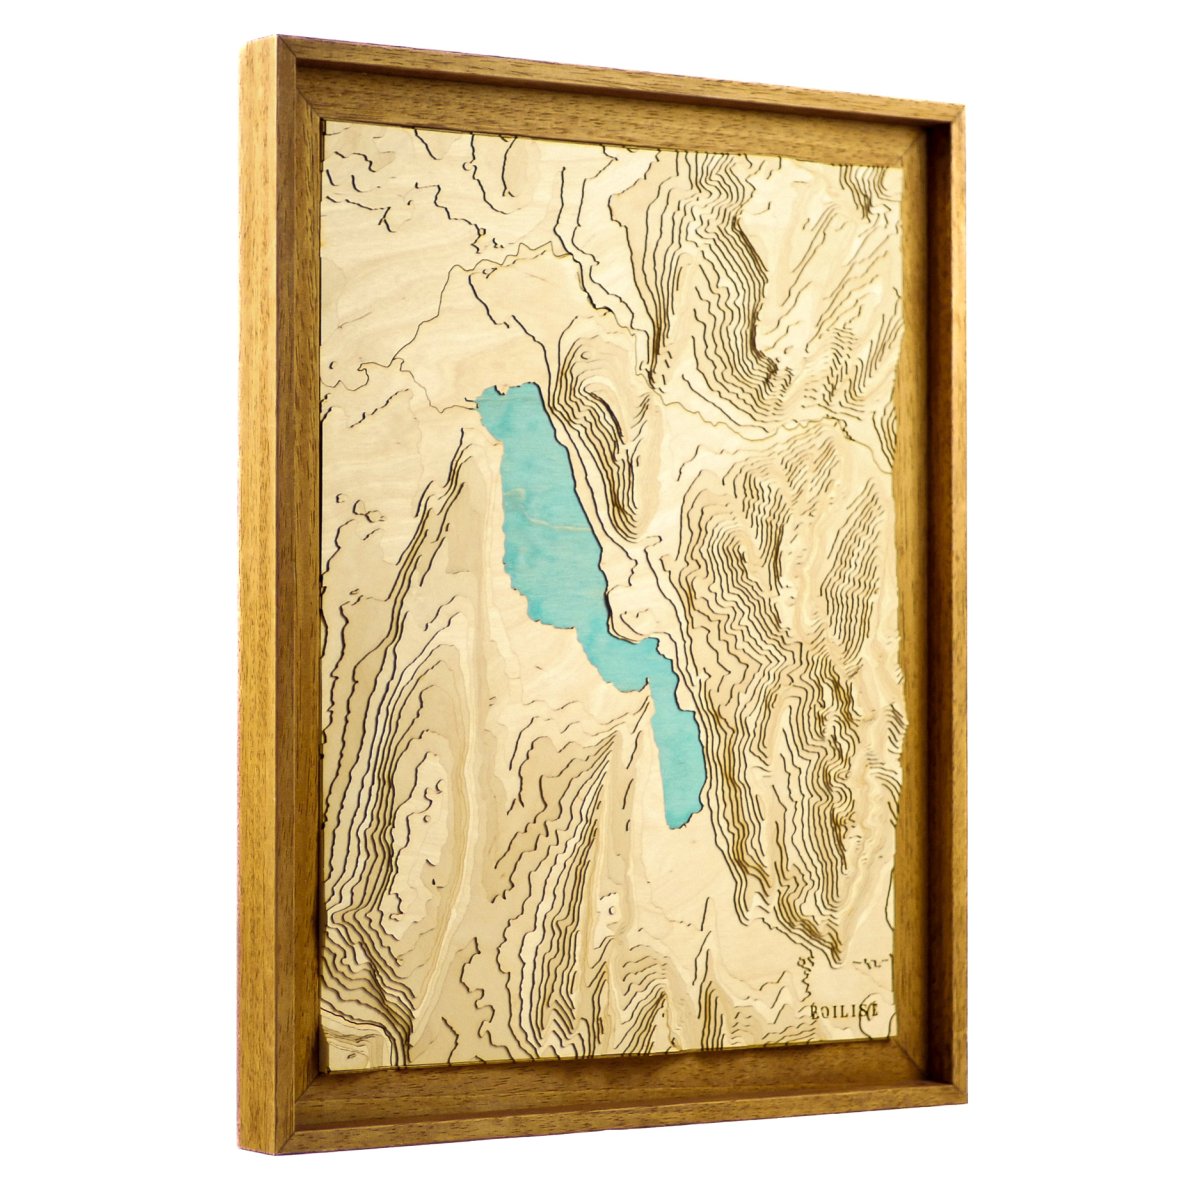 Annecy et son lac, en relief et en bois dans un tableau unique